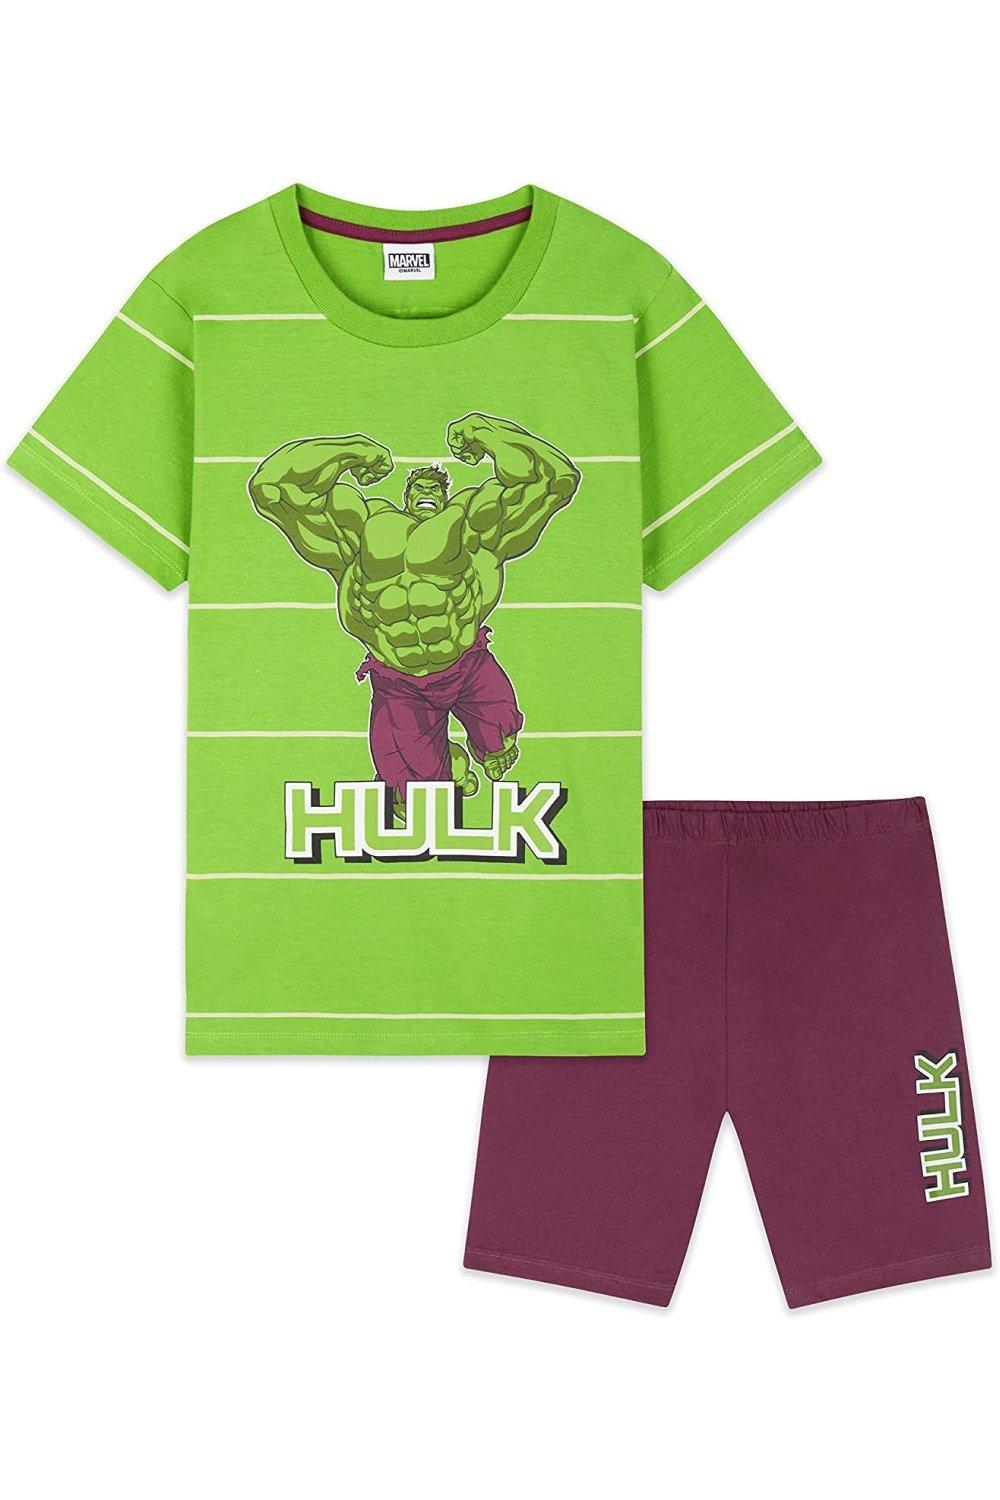 Avengers Hulk Pyjama Set